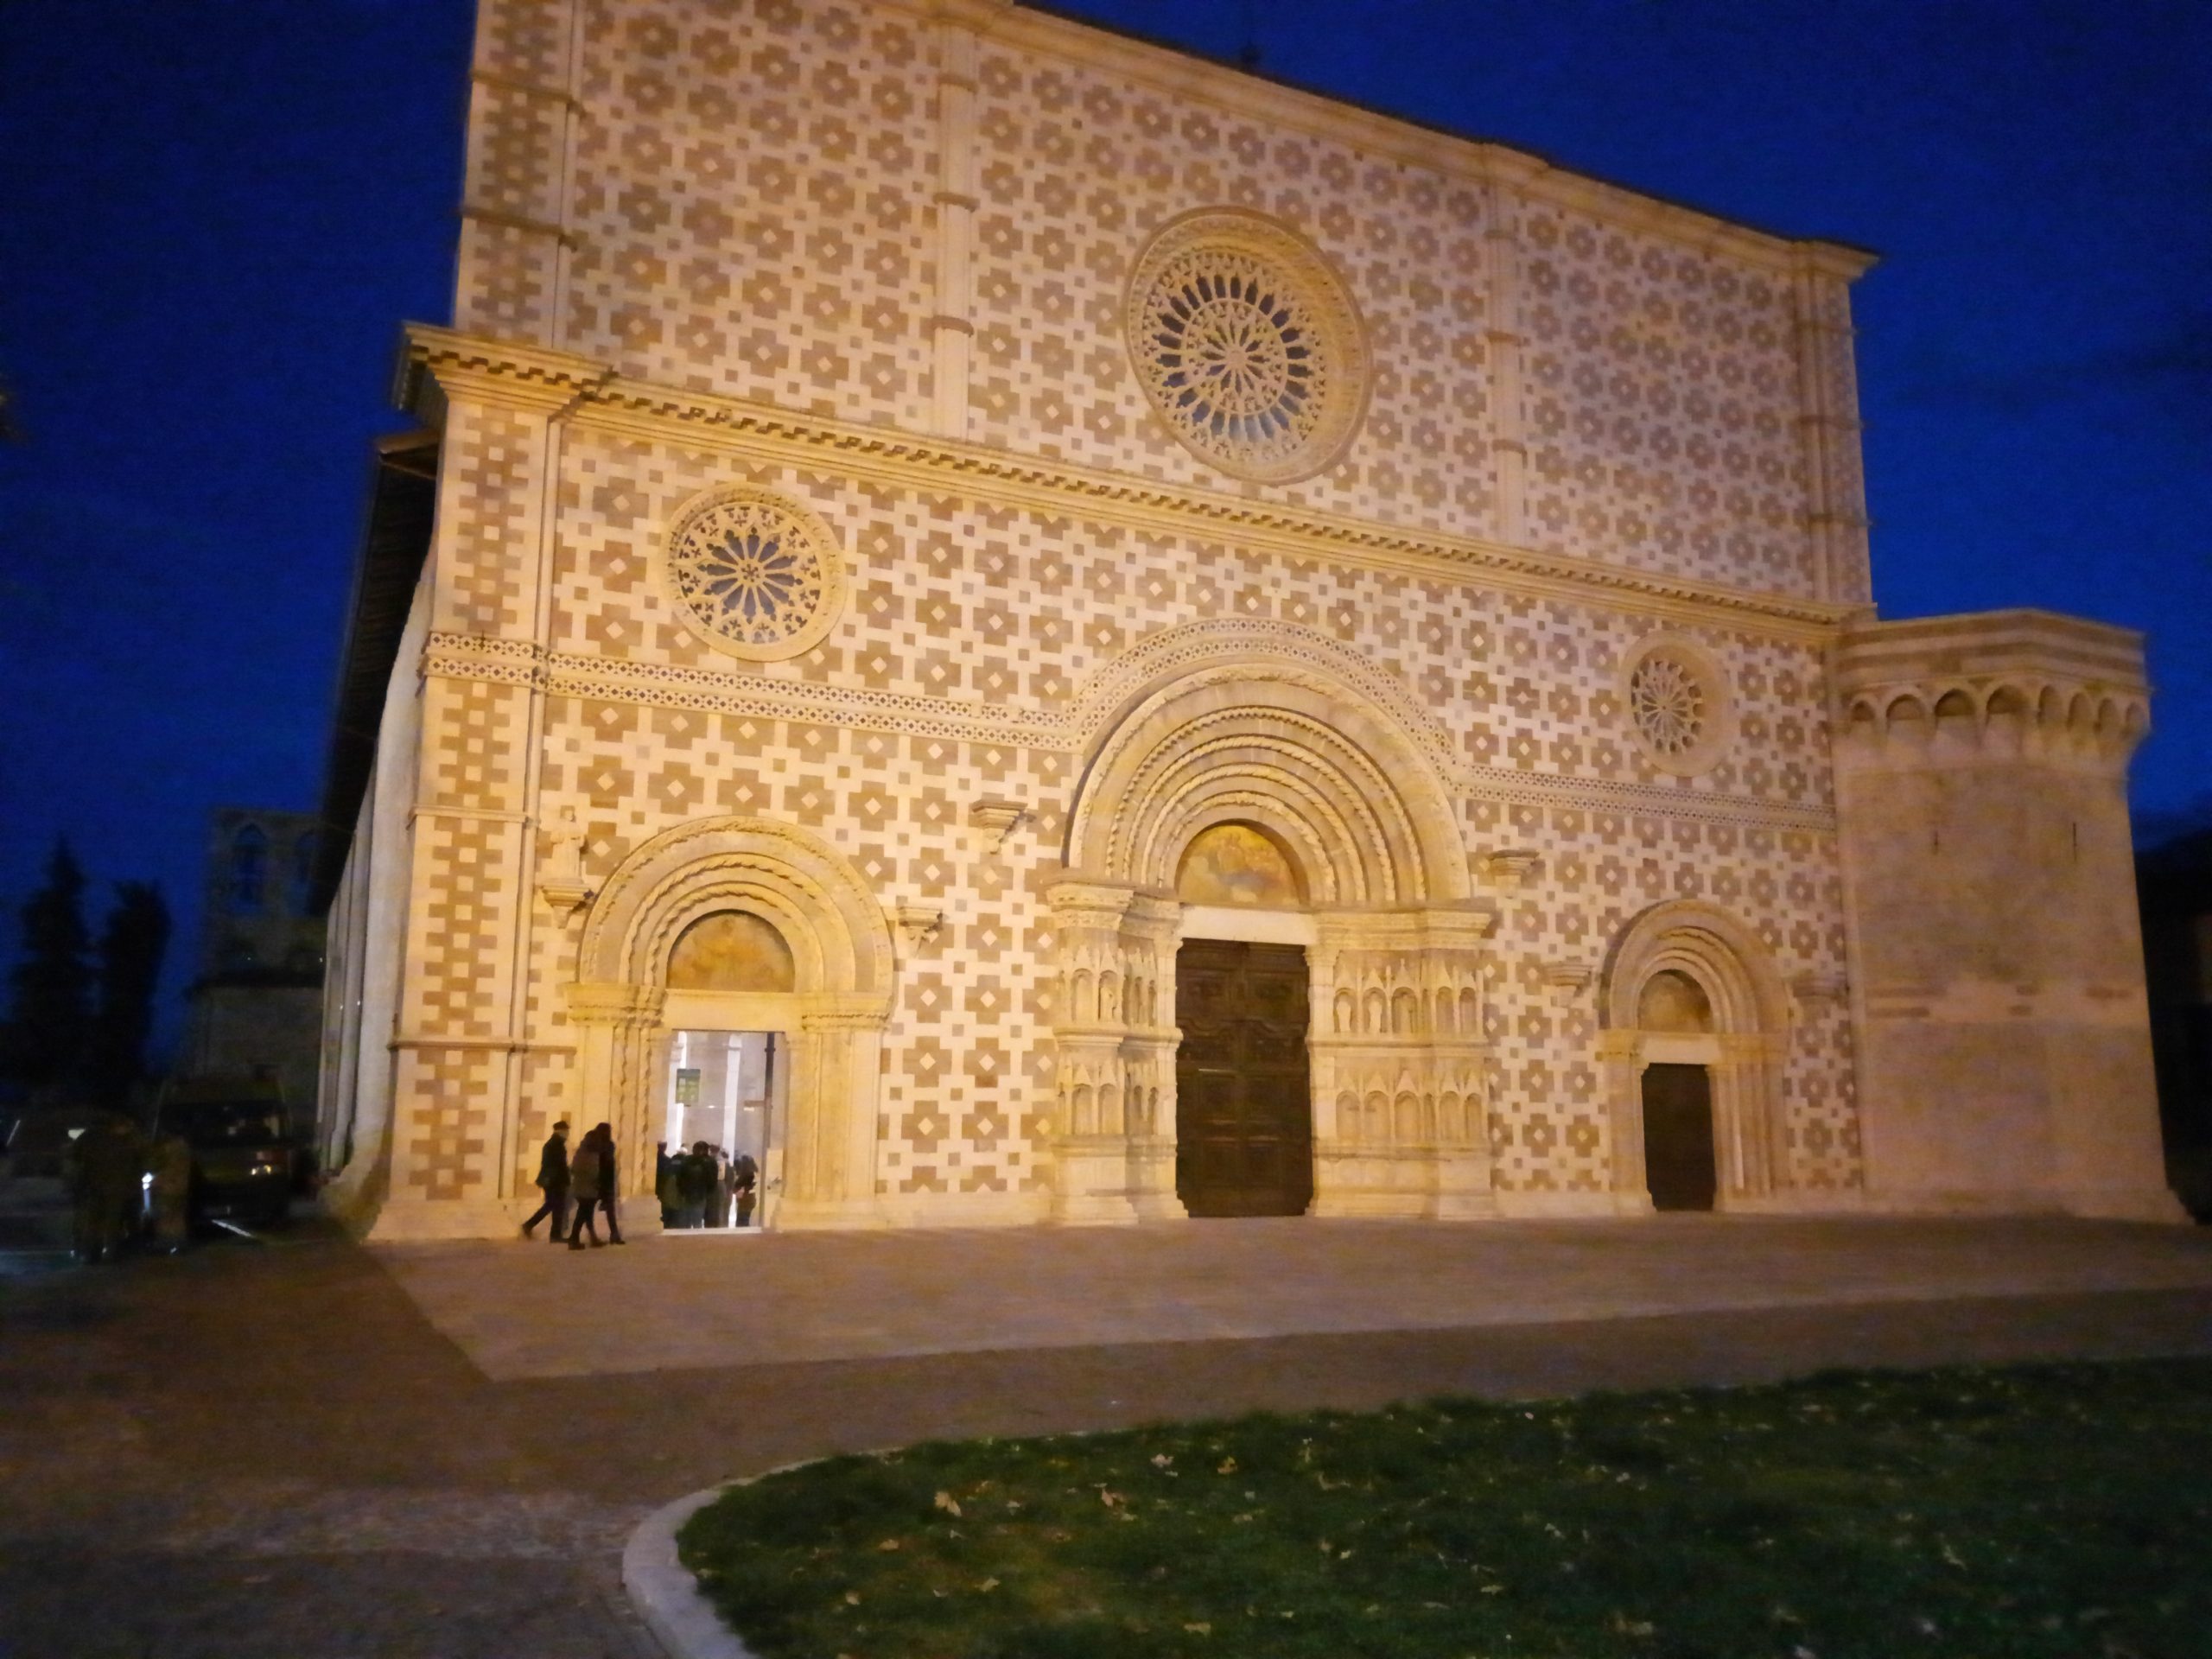 Basilica di Collemaggio l’Aquila